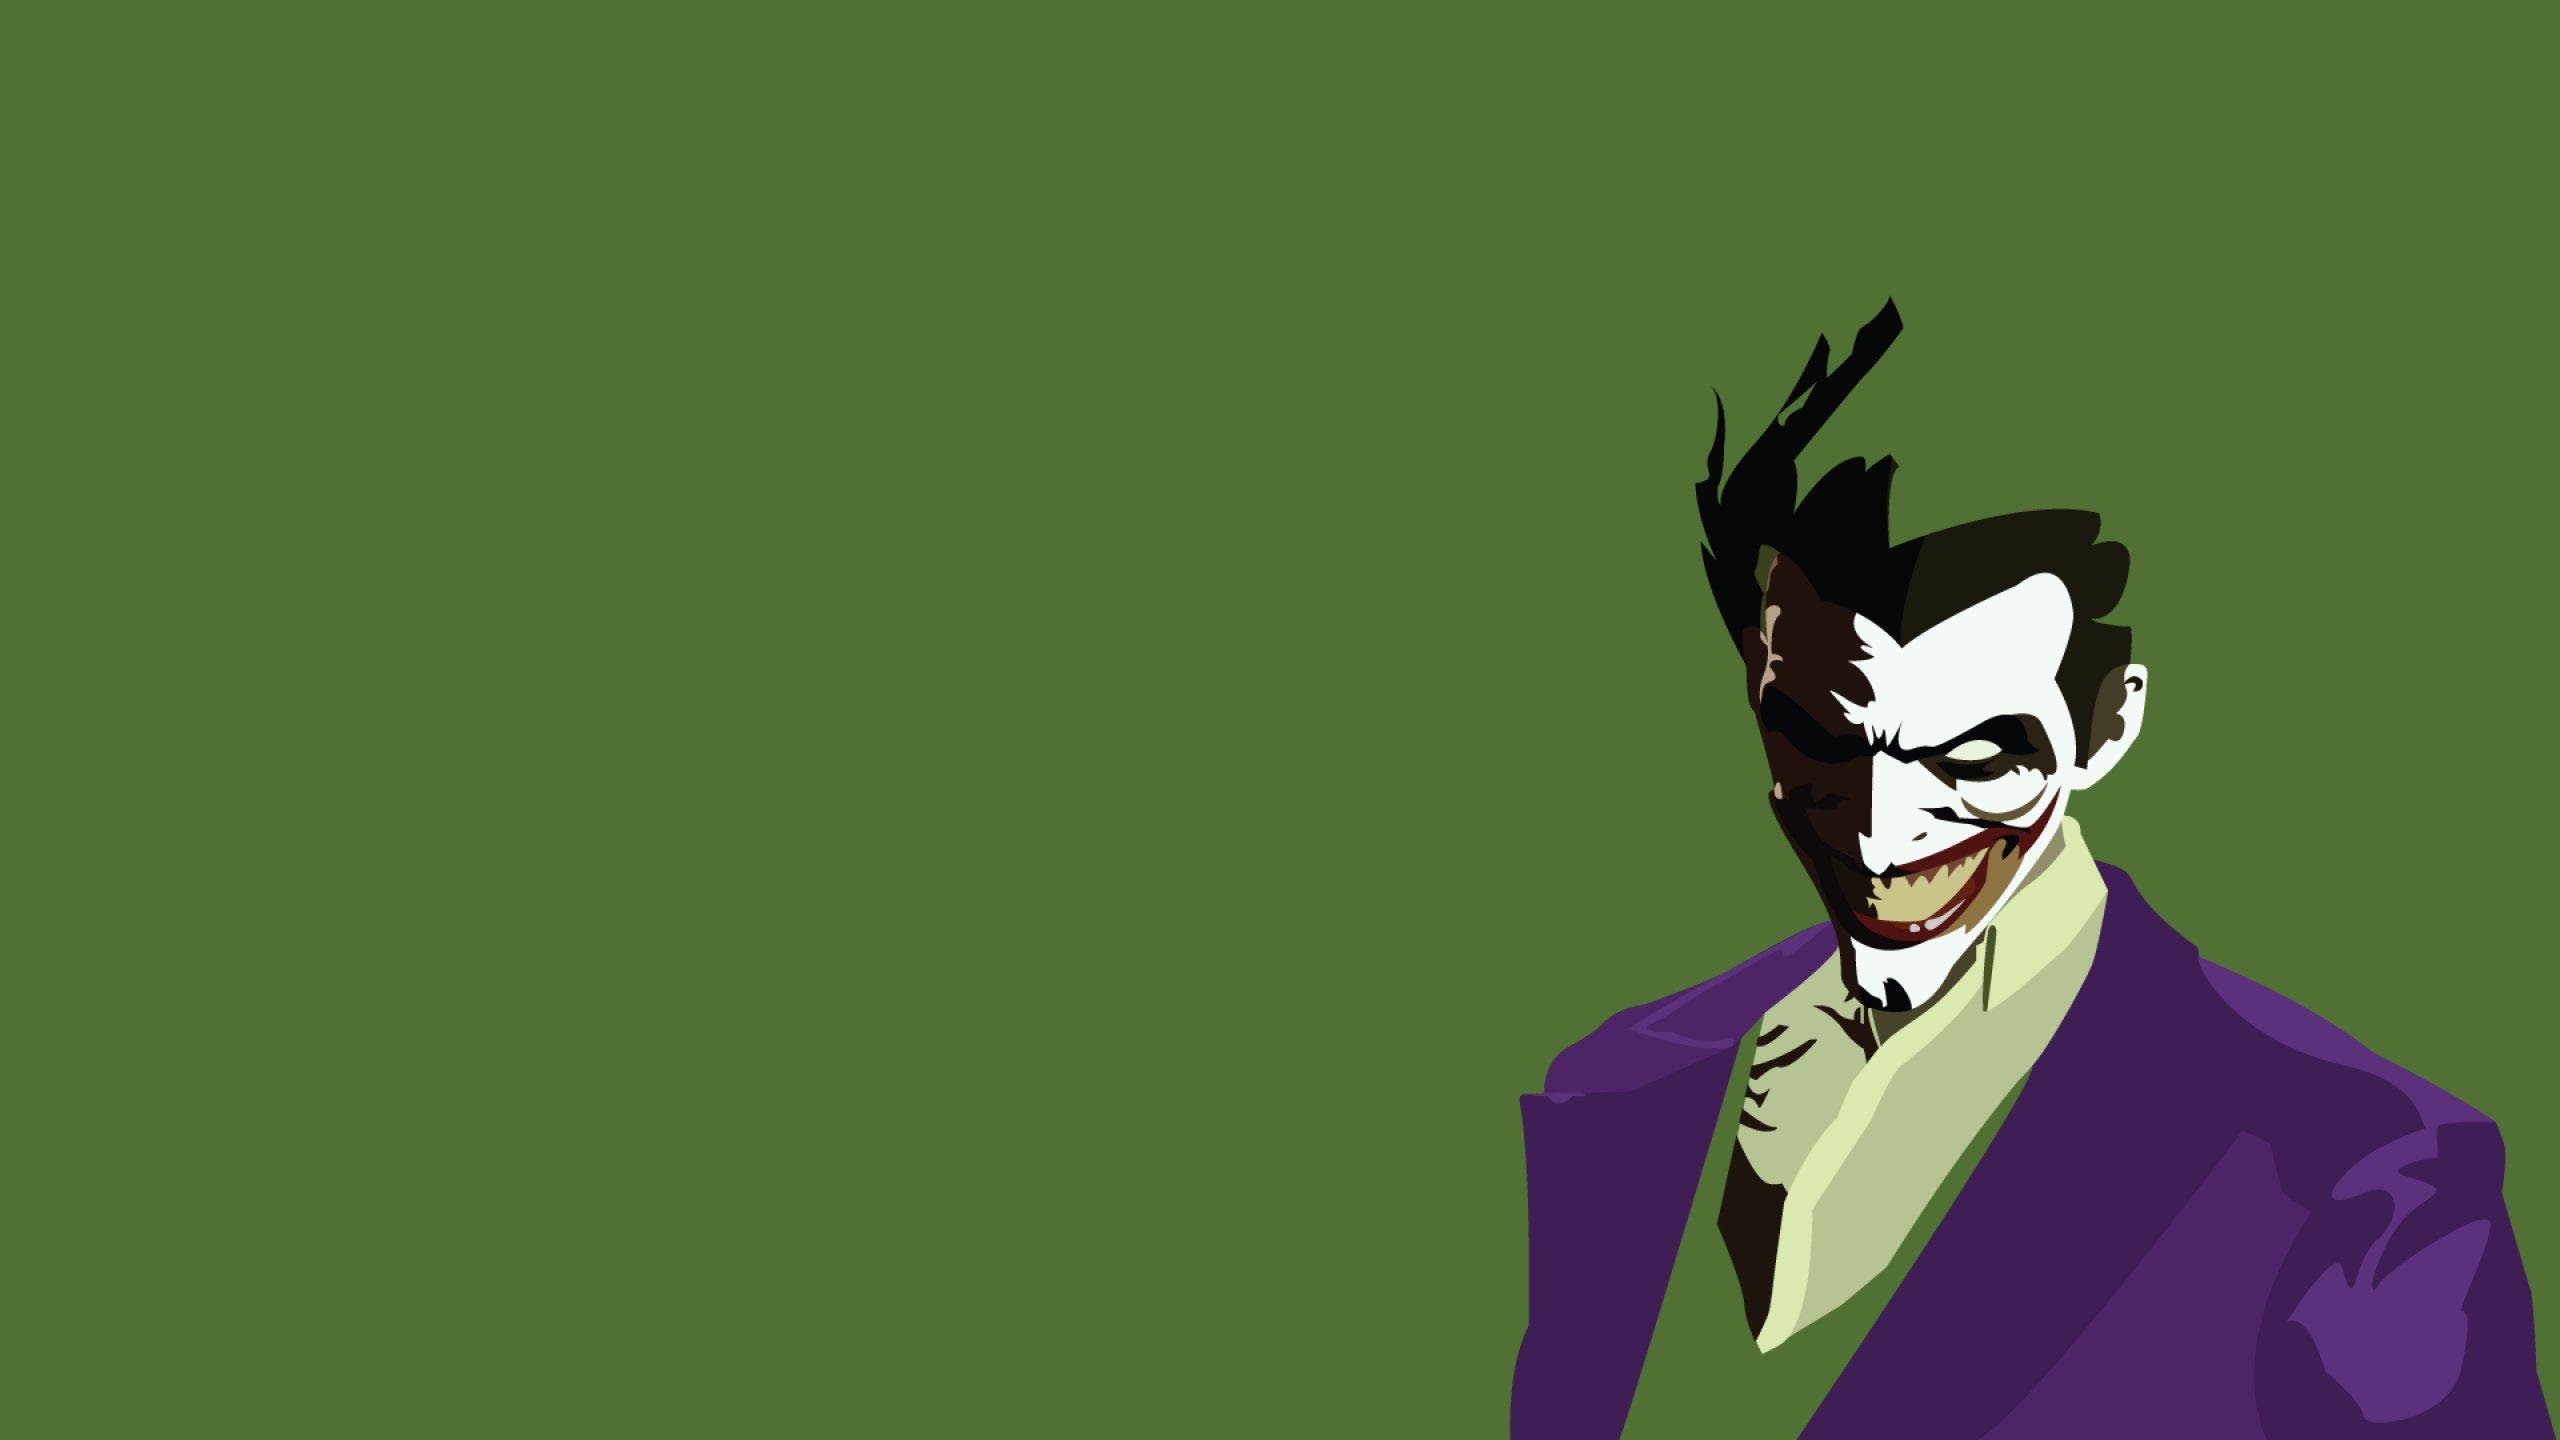 35 Gambar Wallpaper Joker Cartoon Hd terbaru 2020